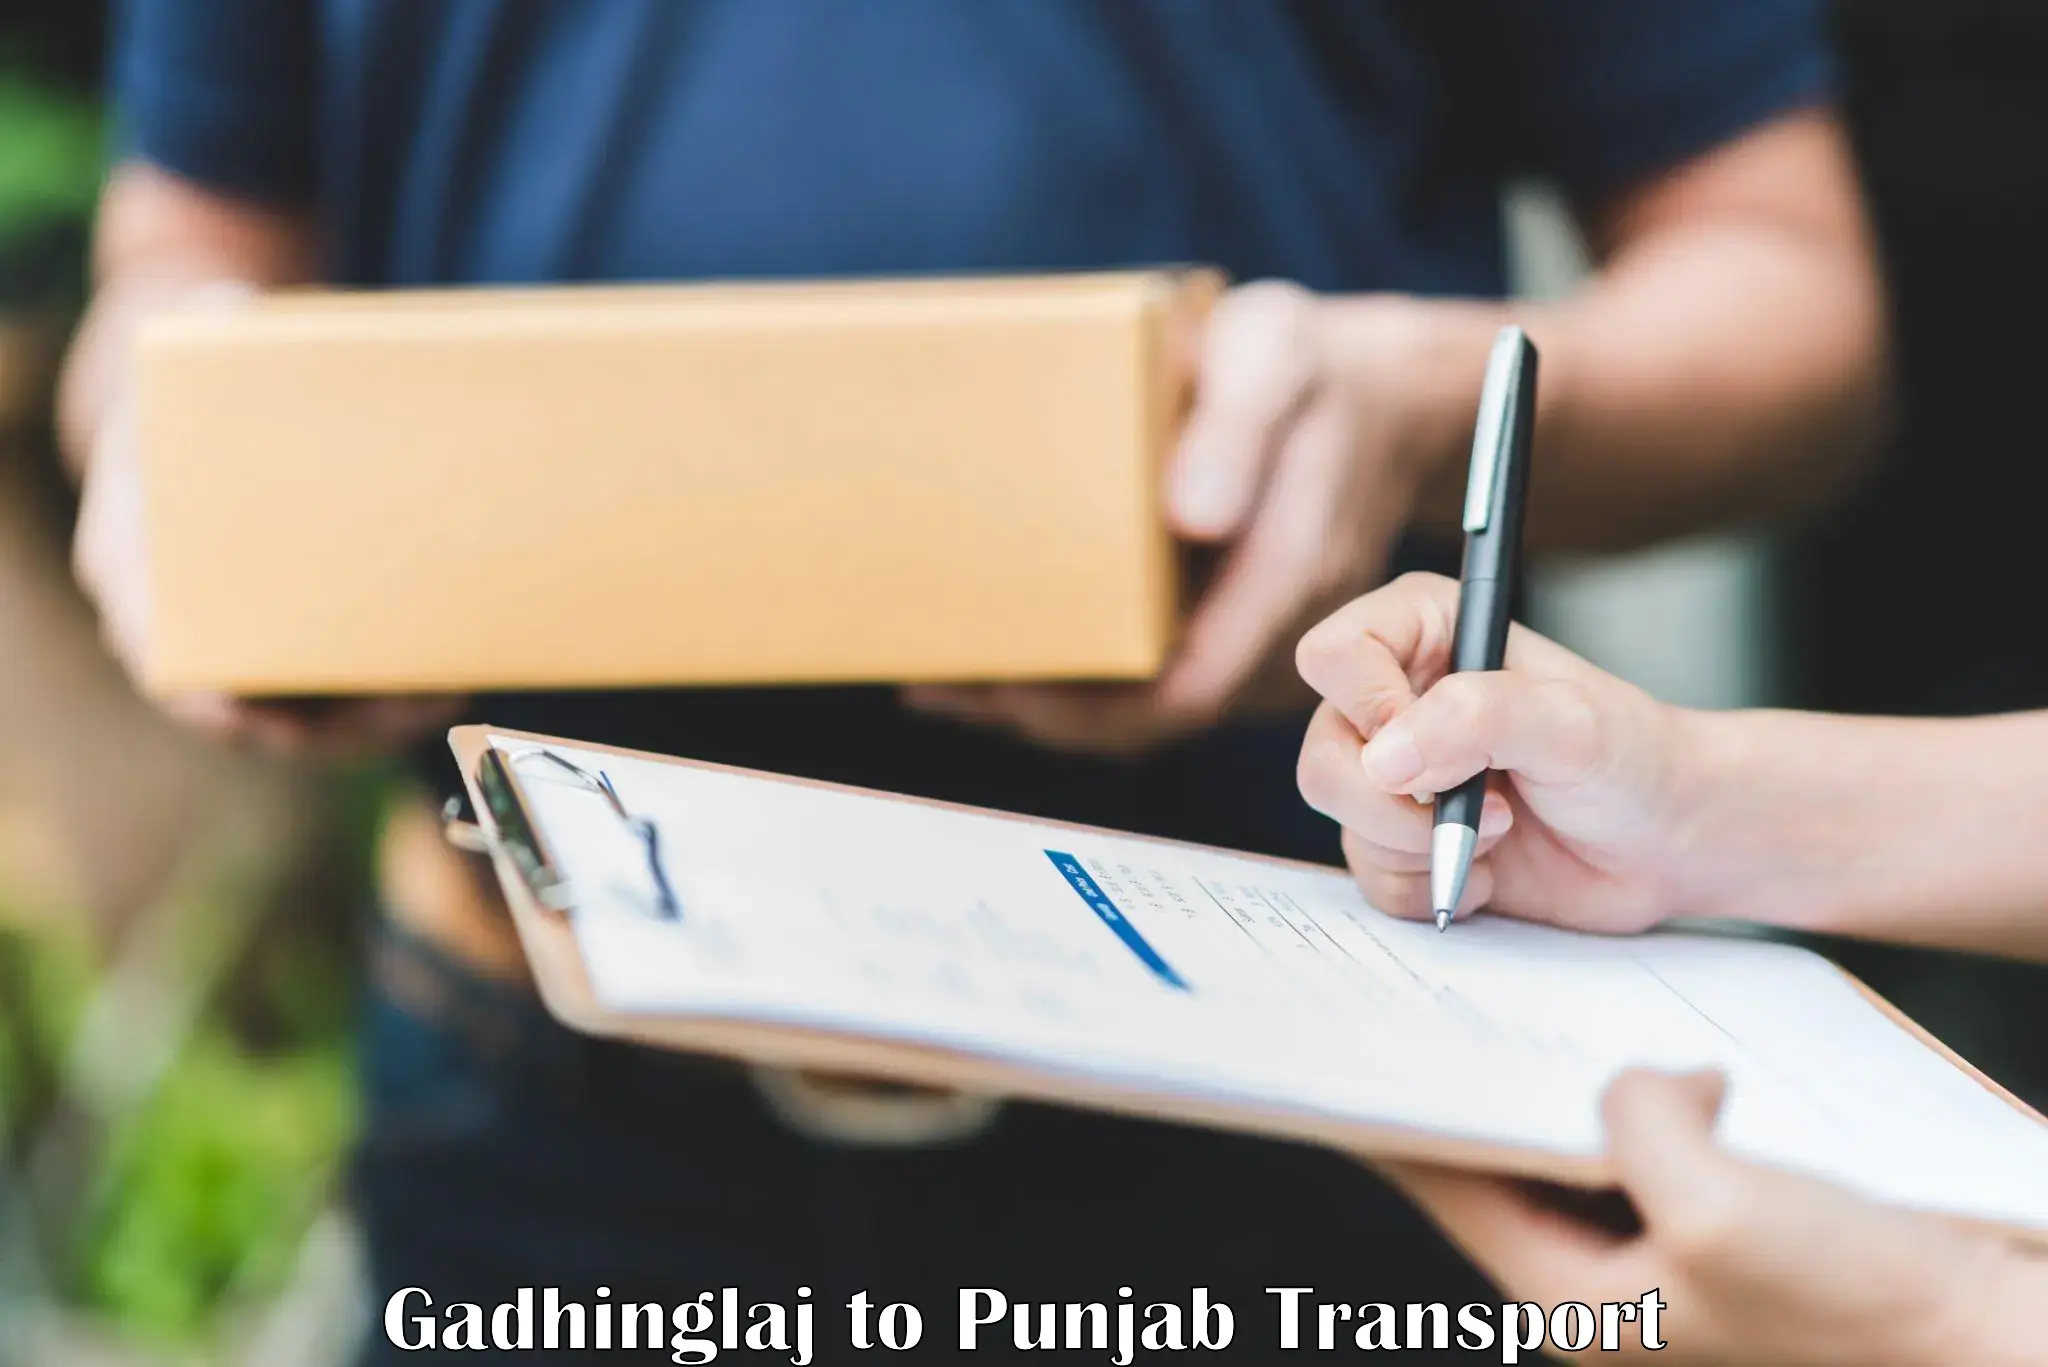 Transport in sharing Gadhinglaj to Punjab